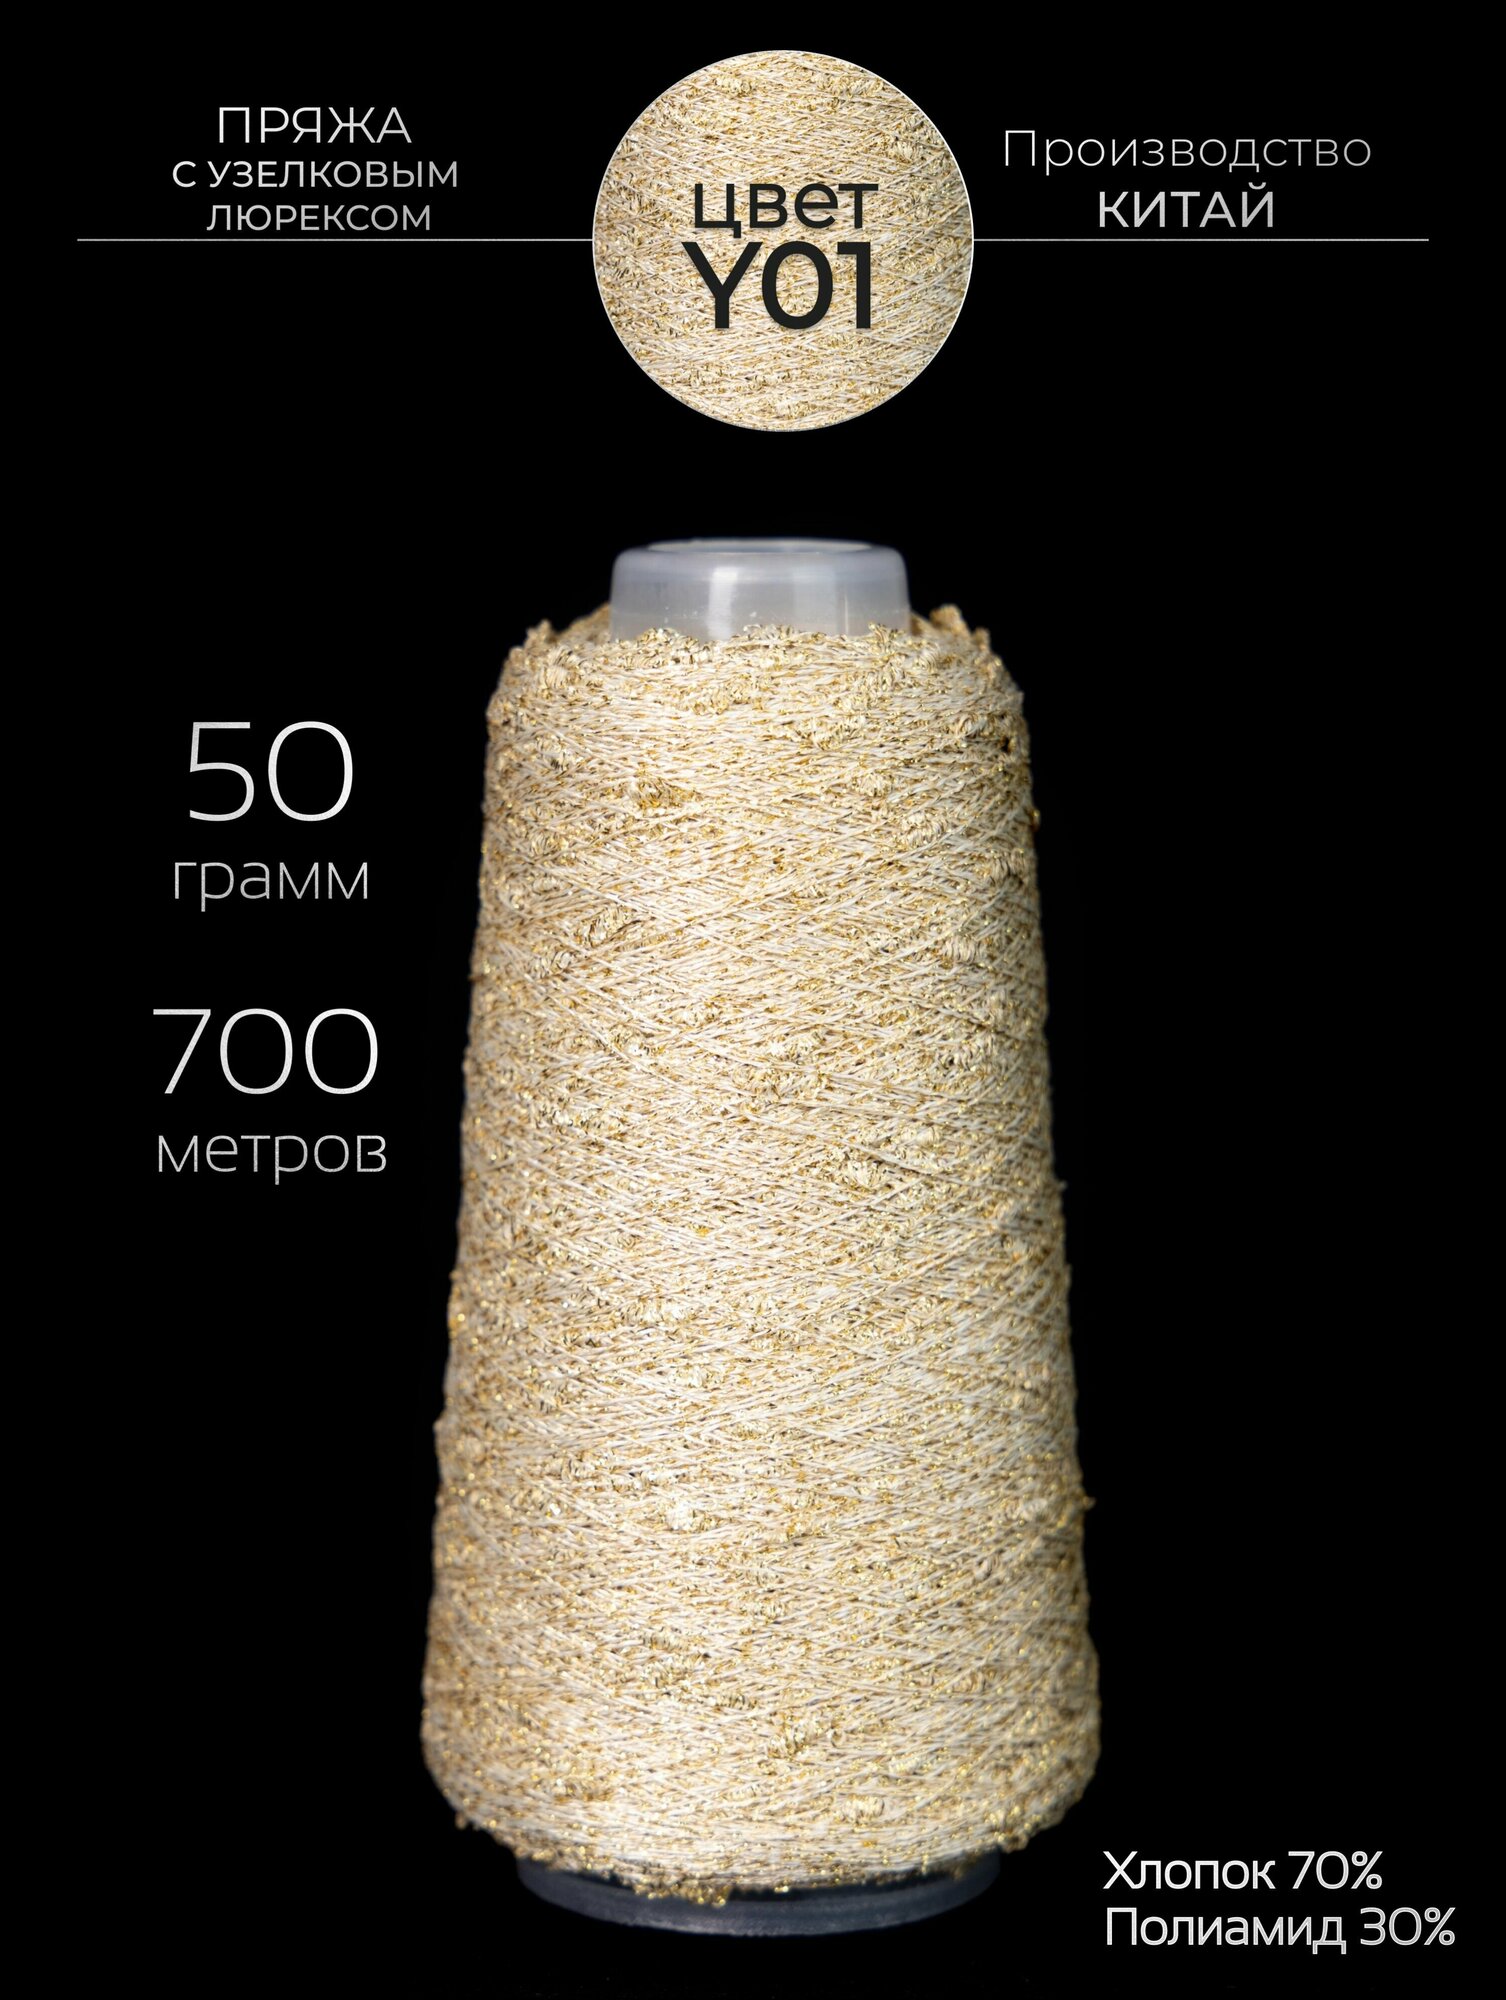 Пряжа для вязания узелковый люрекс с шишечками - шишибрики, из хлопка и люрекса, 50 грамм - 700 метров.